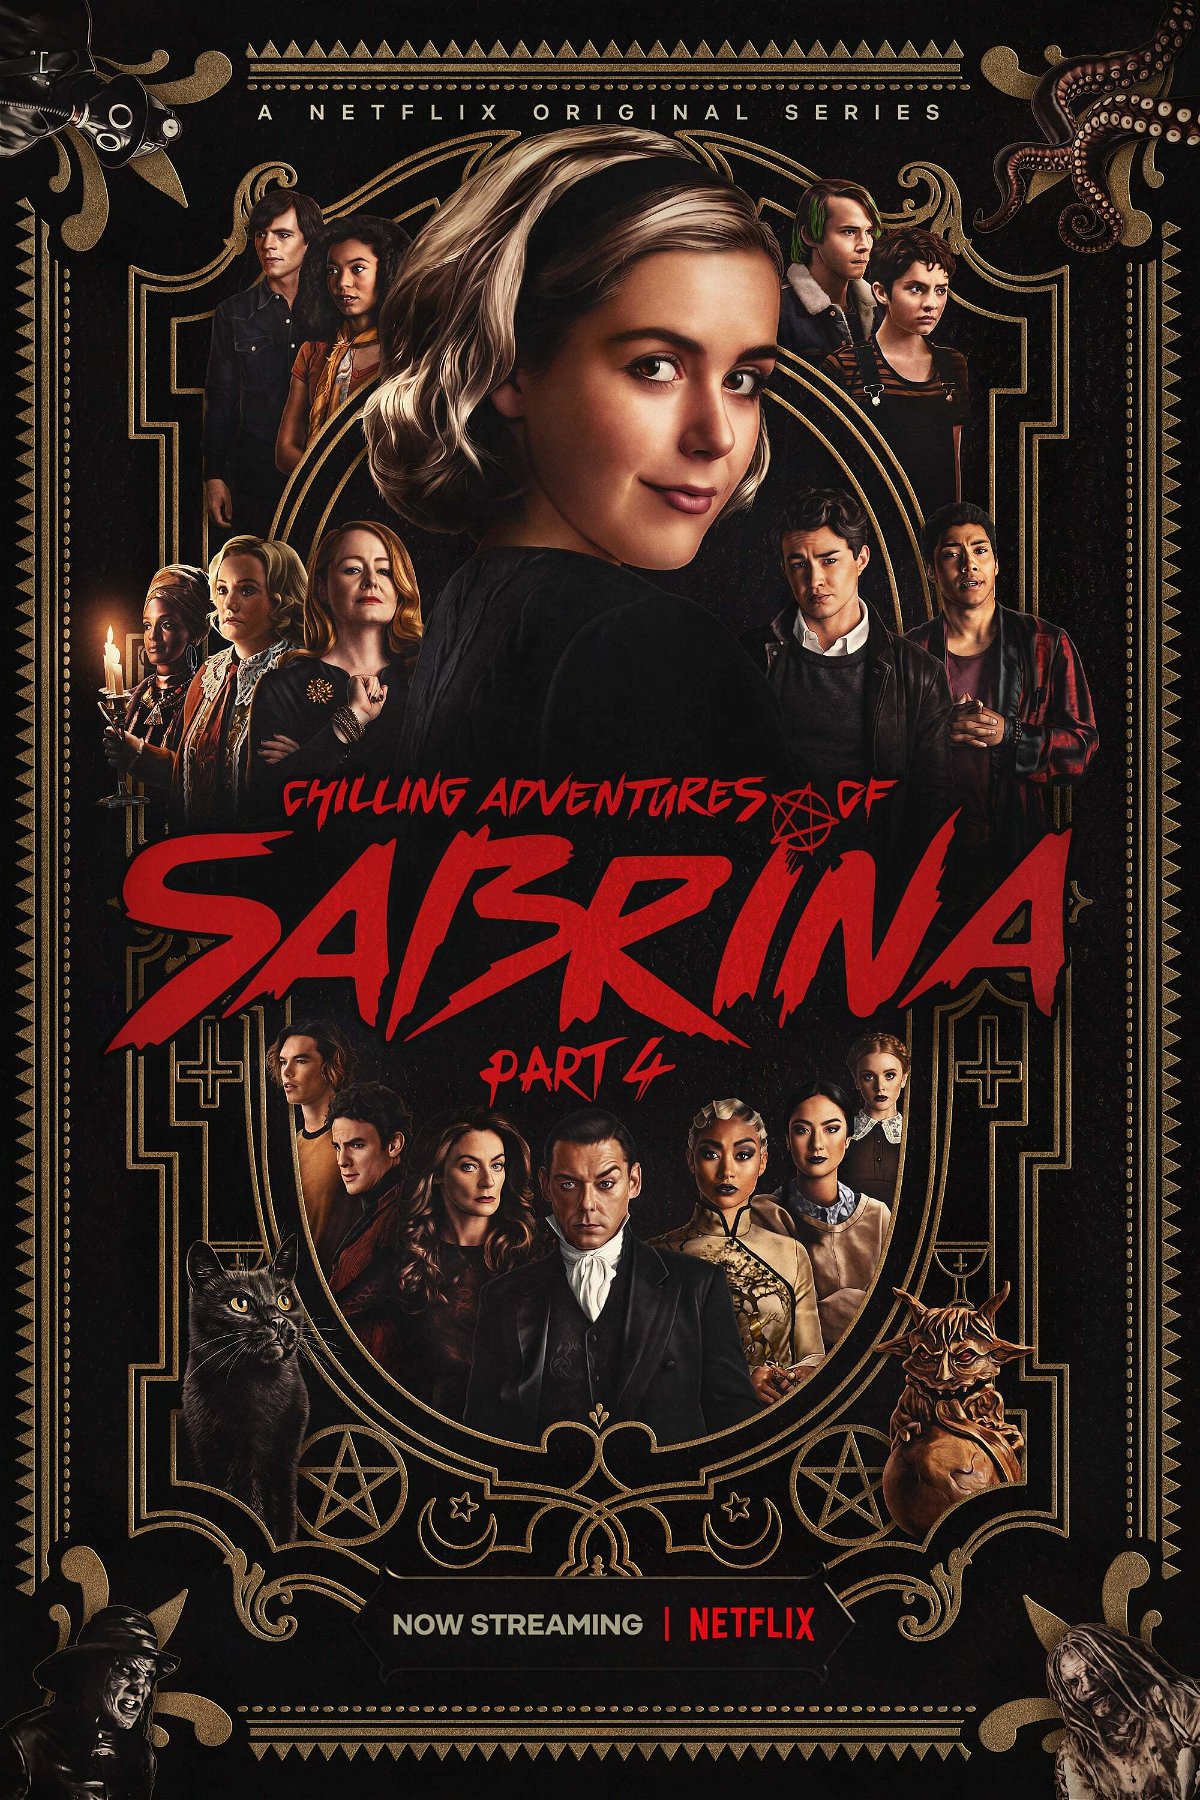 Οι τρομακτικές περιπέτειες της Σαμπρίνα, η αφίσα του τέταρτου μέρους